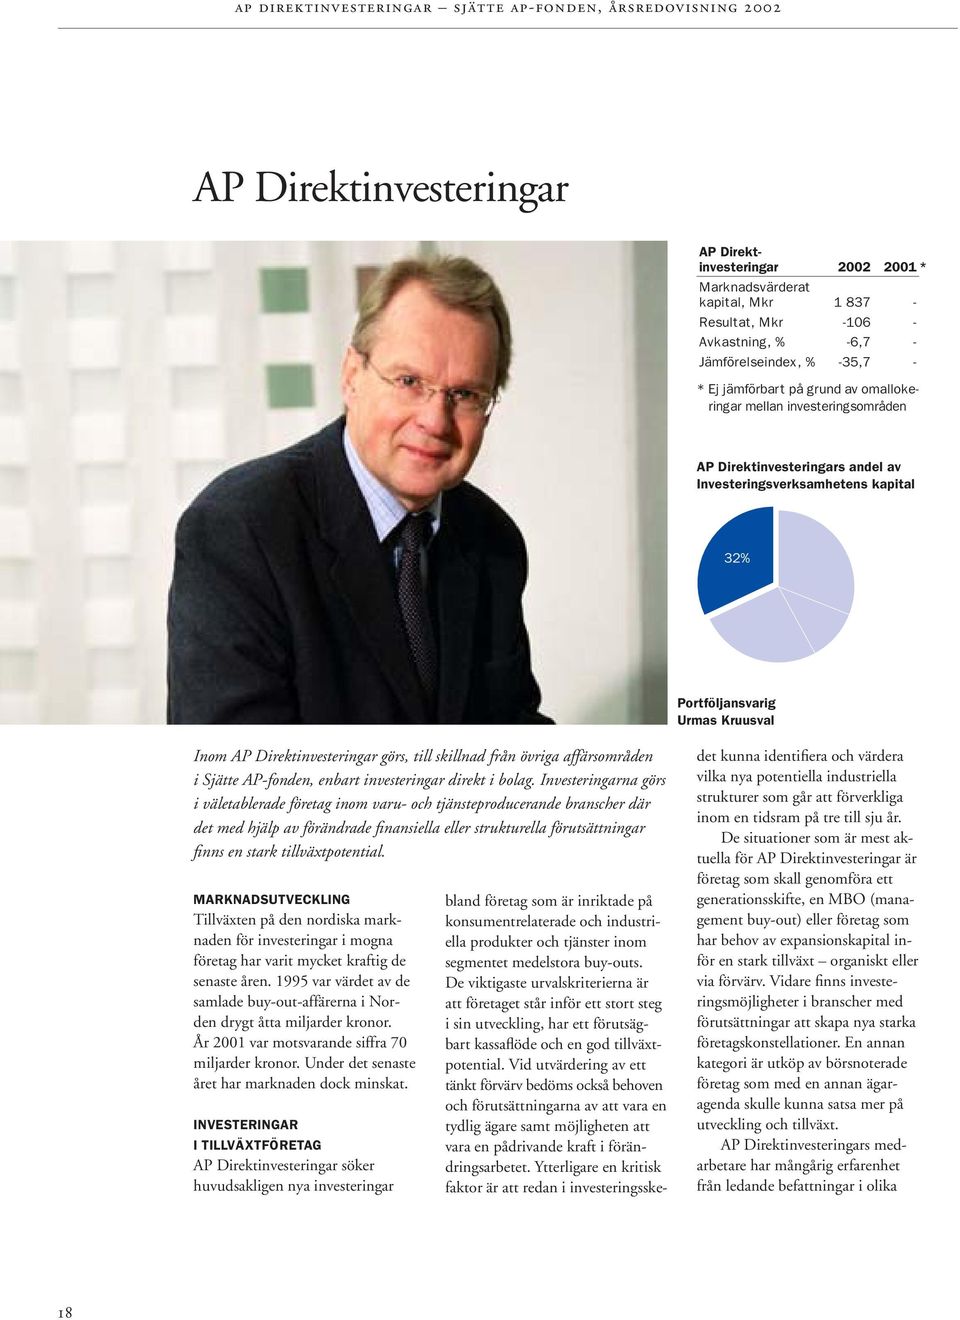 Inom AP Direktinvesteringar görs, till skillnad från övriga affärsområden i Sjätte AP-fonden, enbart investeringar direkt i bolag.